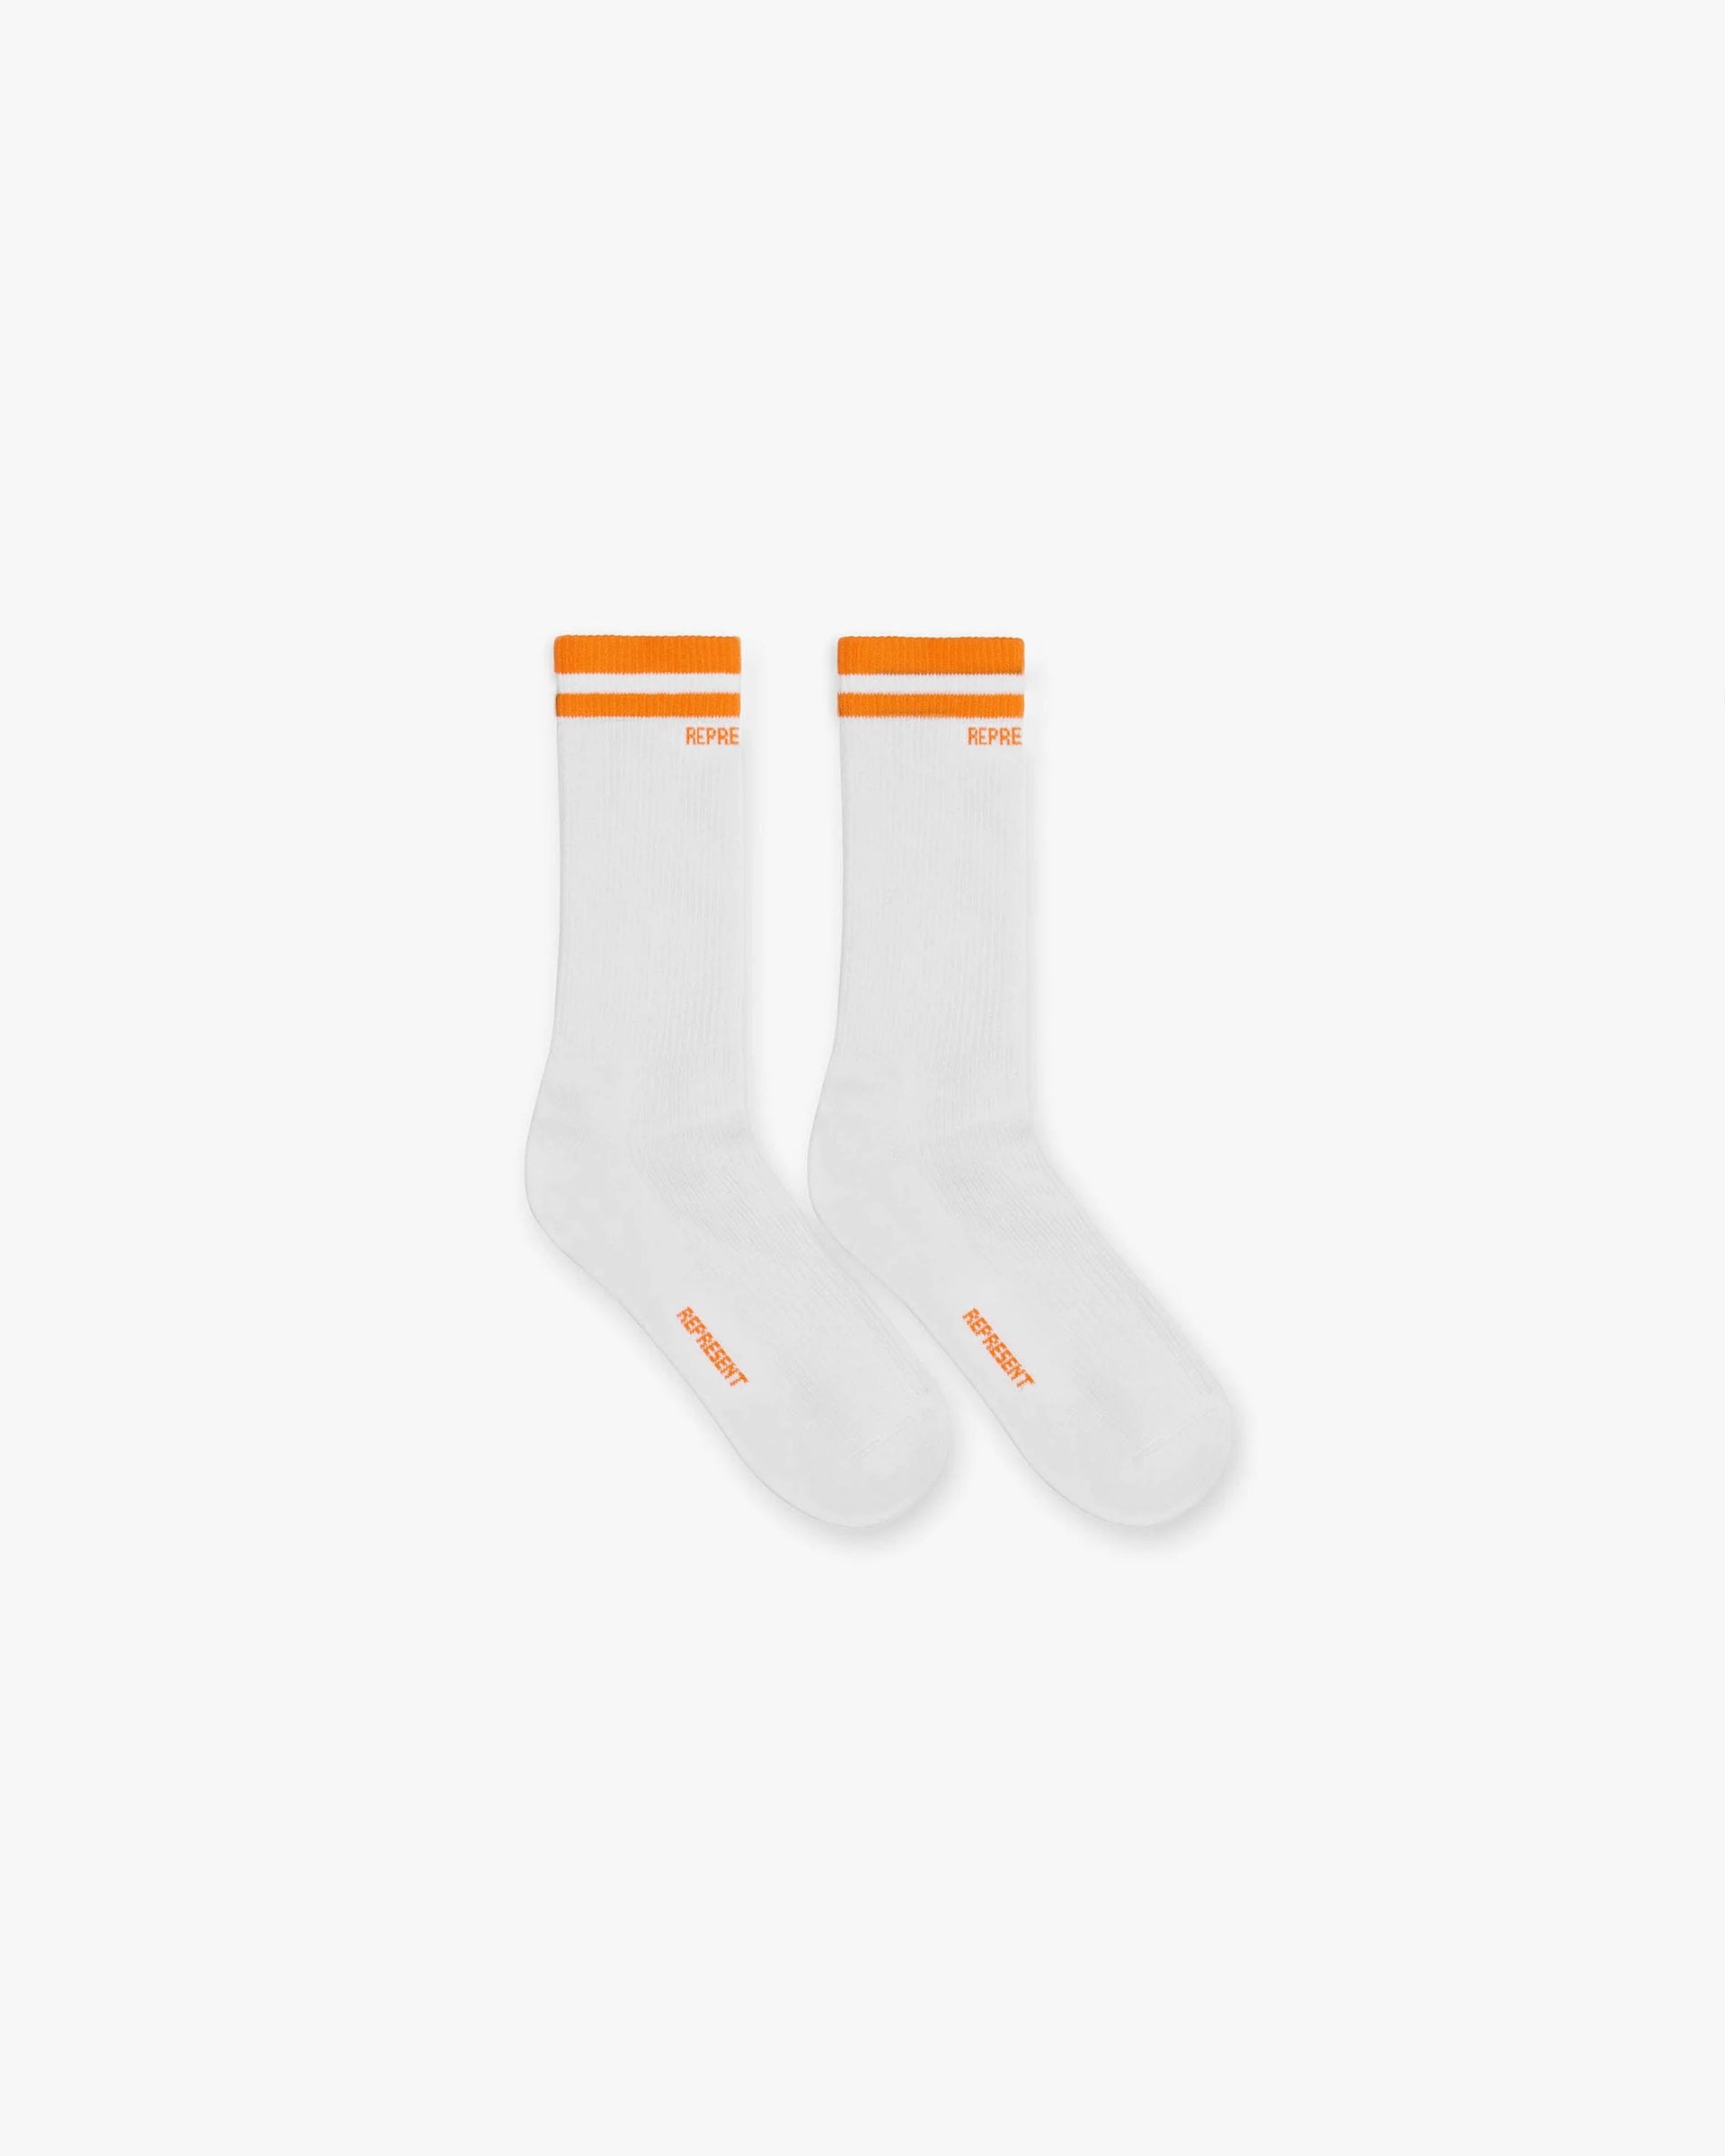 Represent College Socks | Neon Orange Accessories SS23 | Represent Clo